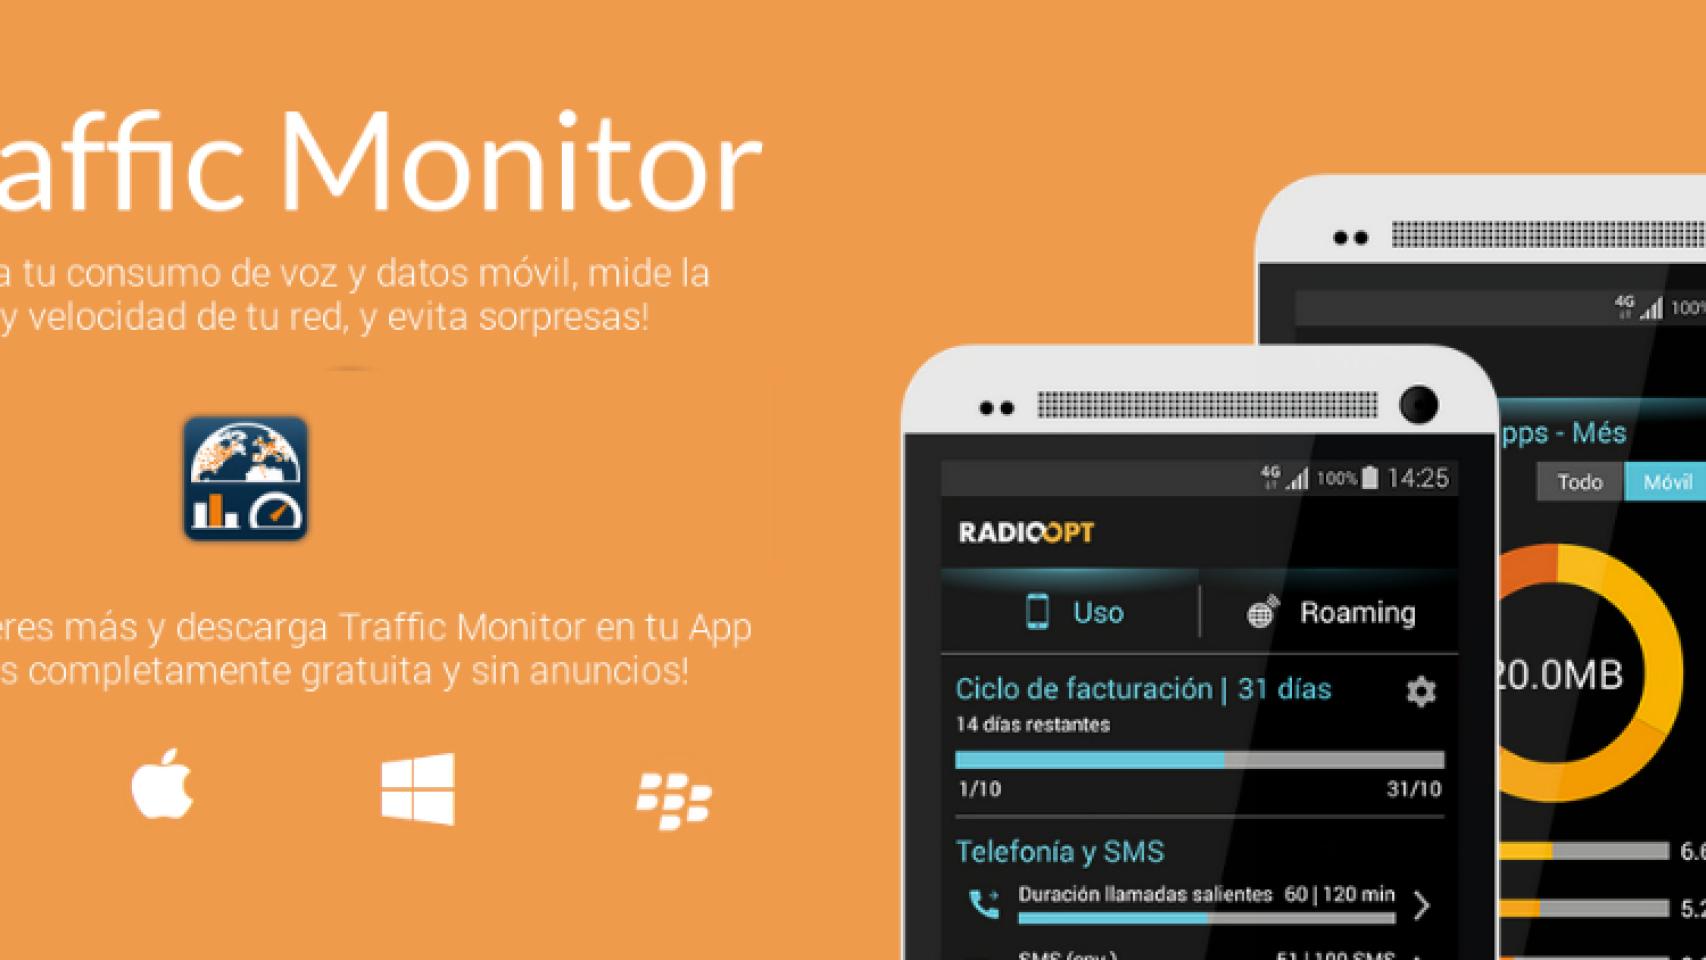 Controla tu consumo, cobertura, velocidad y mucho más con Traffic Monitor